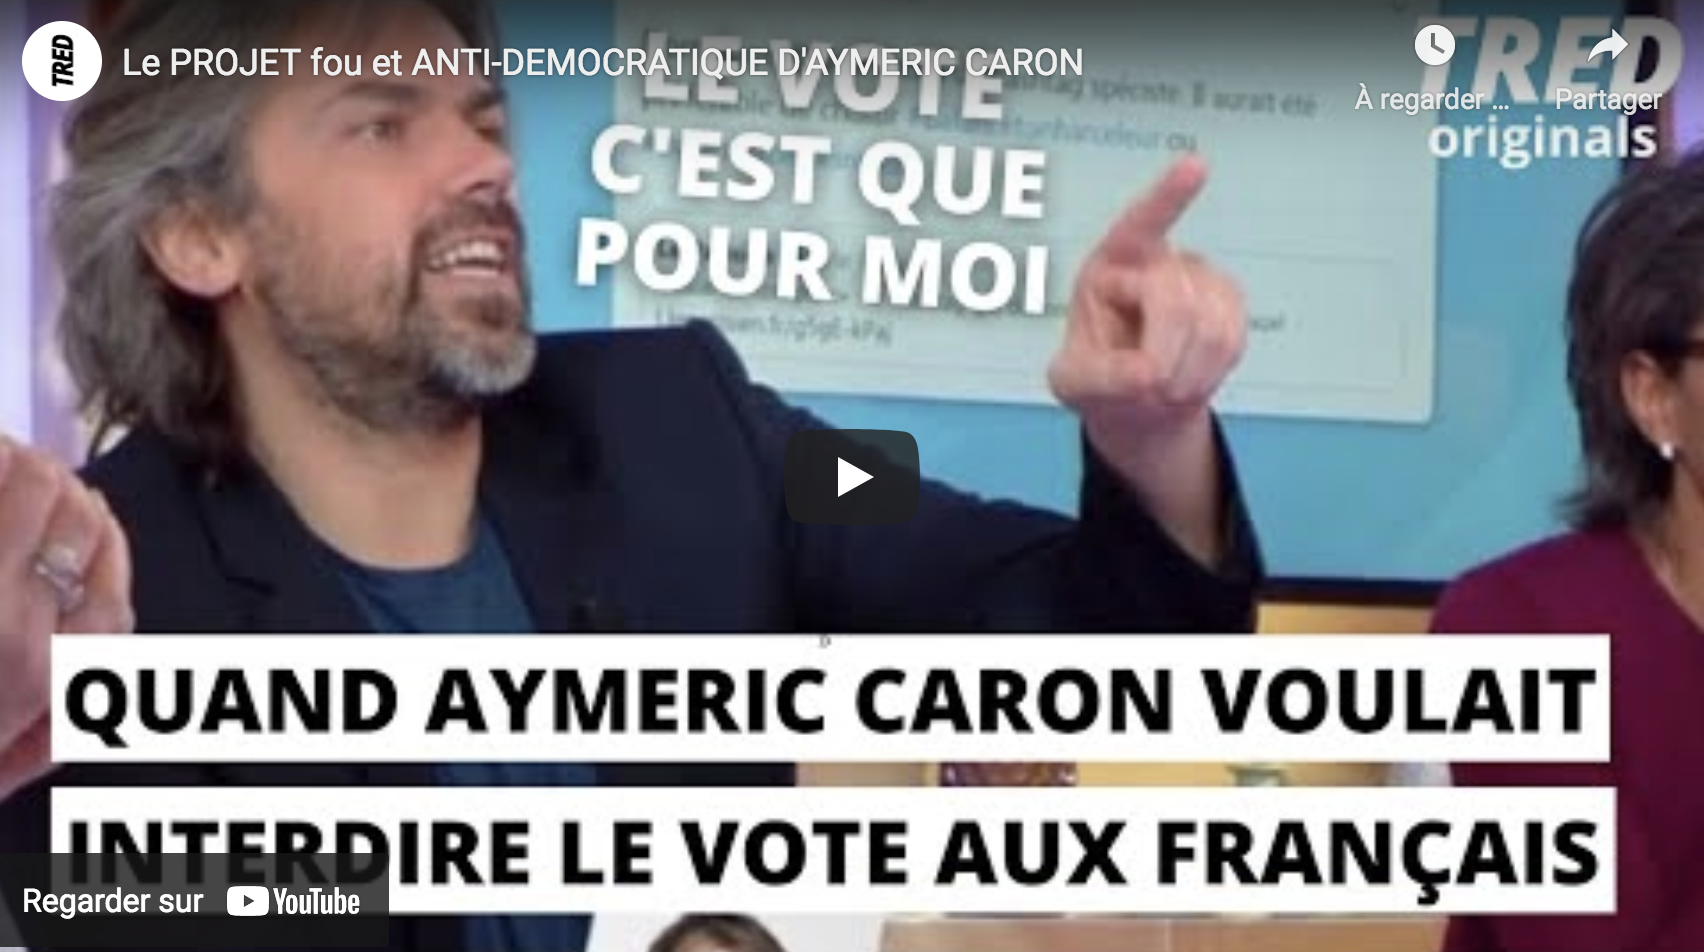 Le projet fou et anti-démocratique d’Aymeric Caron (VIDÉO)